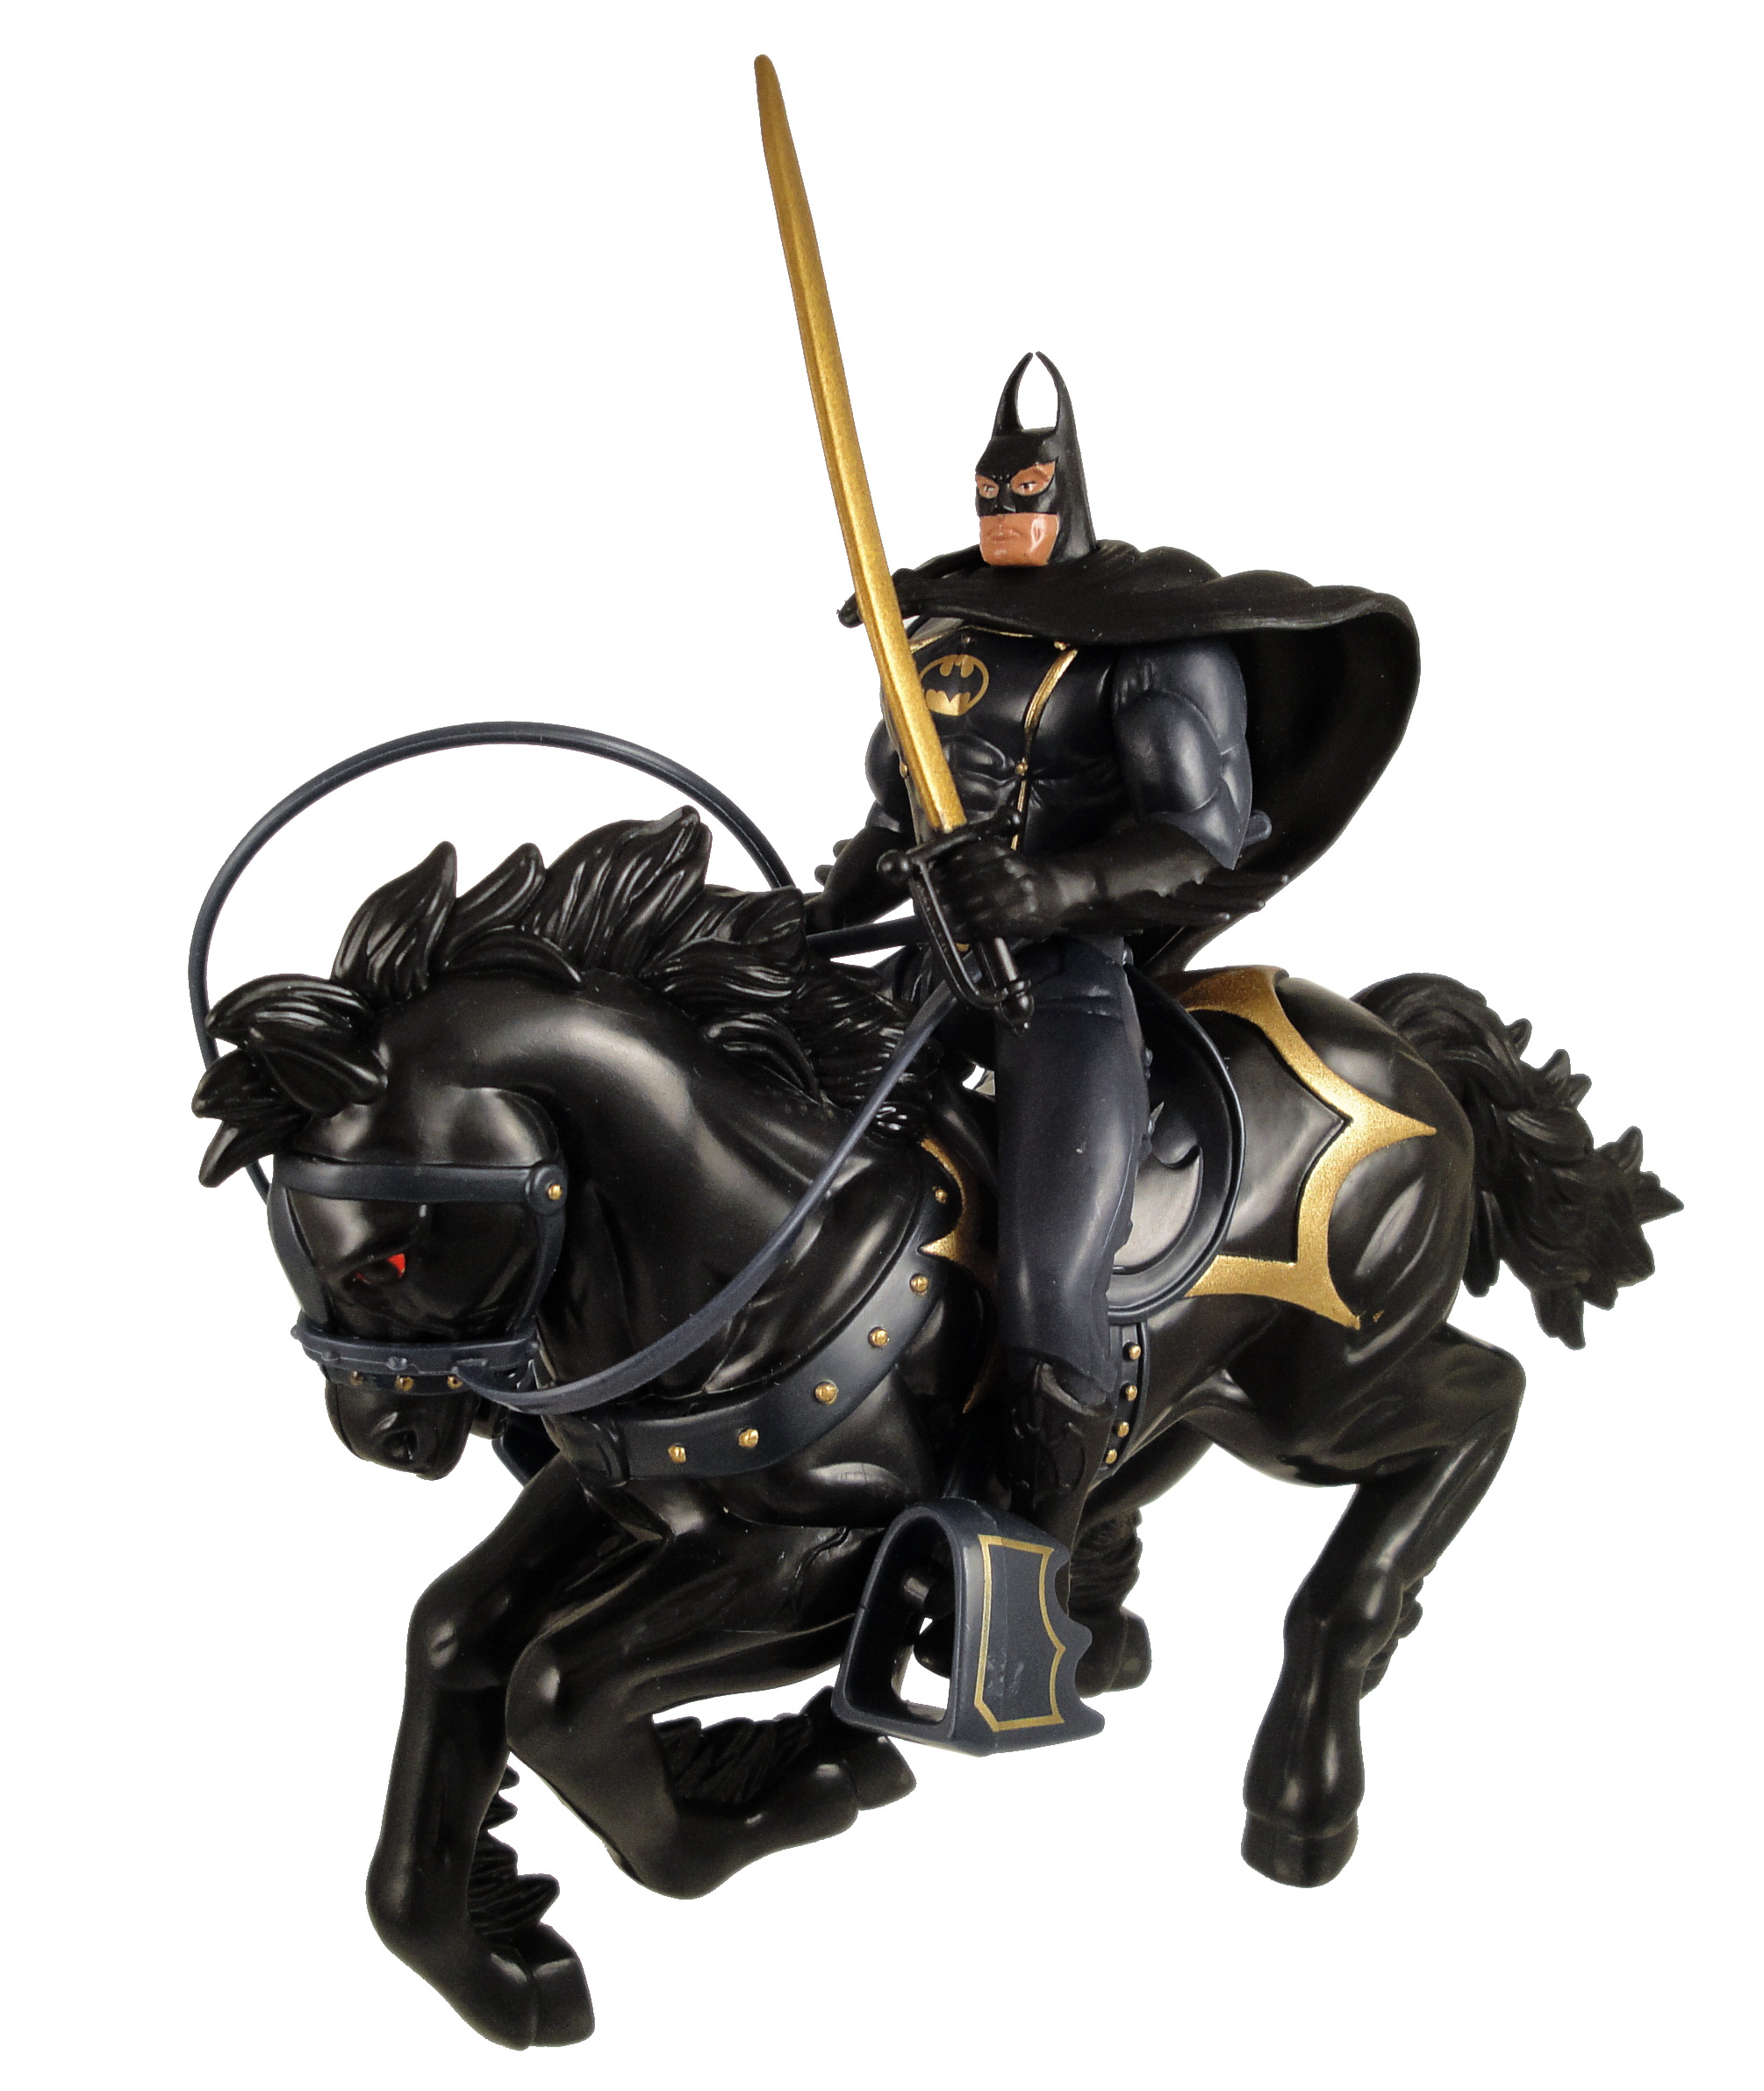 Figura de juguete vintage Kenner '94 Legends of Batman Dark Rider Batman  Horse V. RARA